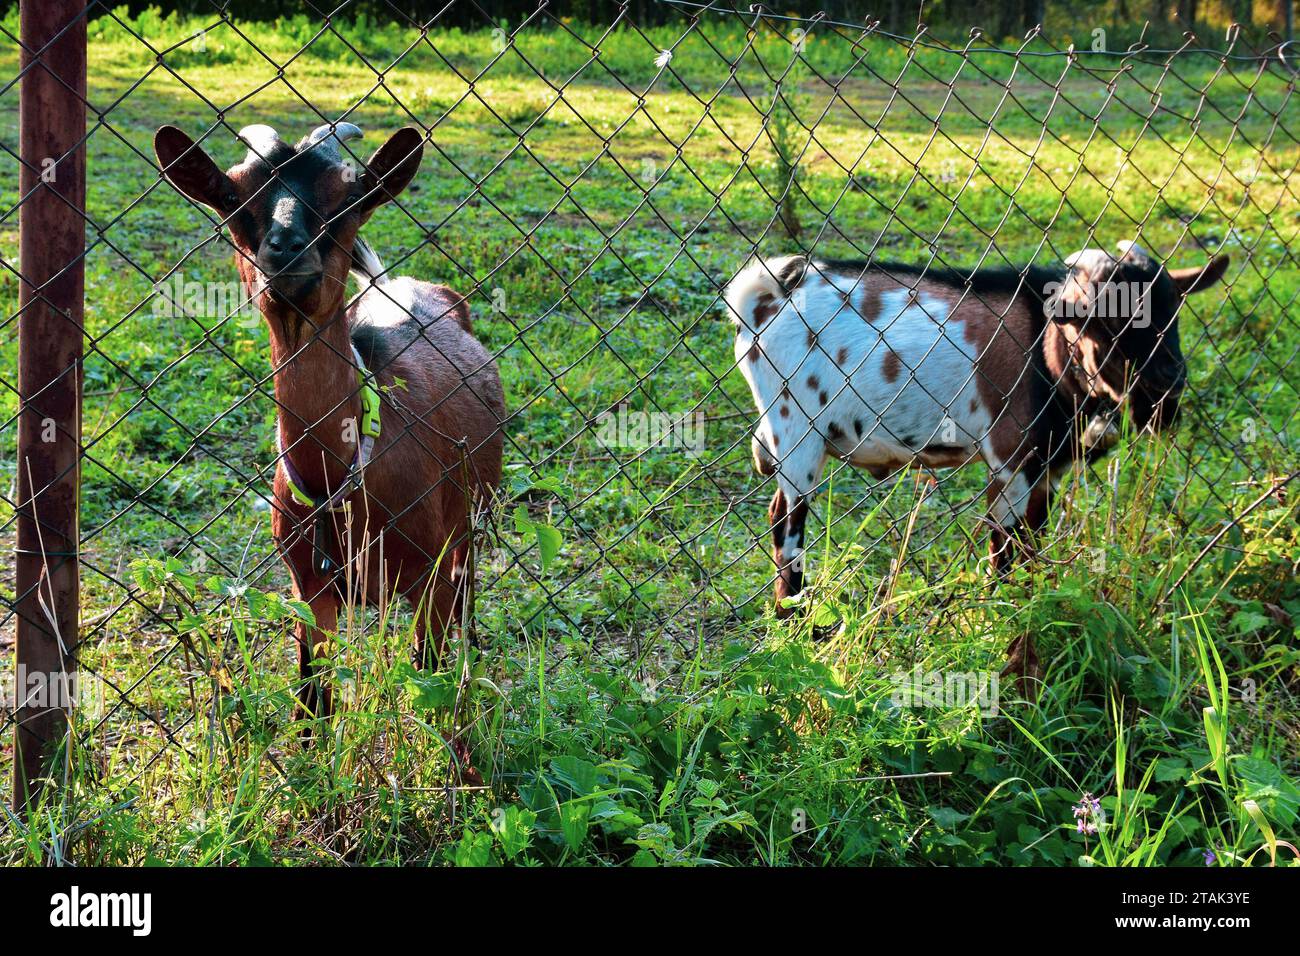 Zwei Ziegen stehen neben einem Drahtzaun. Zähme, Haustiere bleiben friedlich auf dem umzäunten Grundstück. Stockfoto